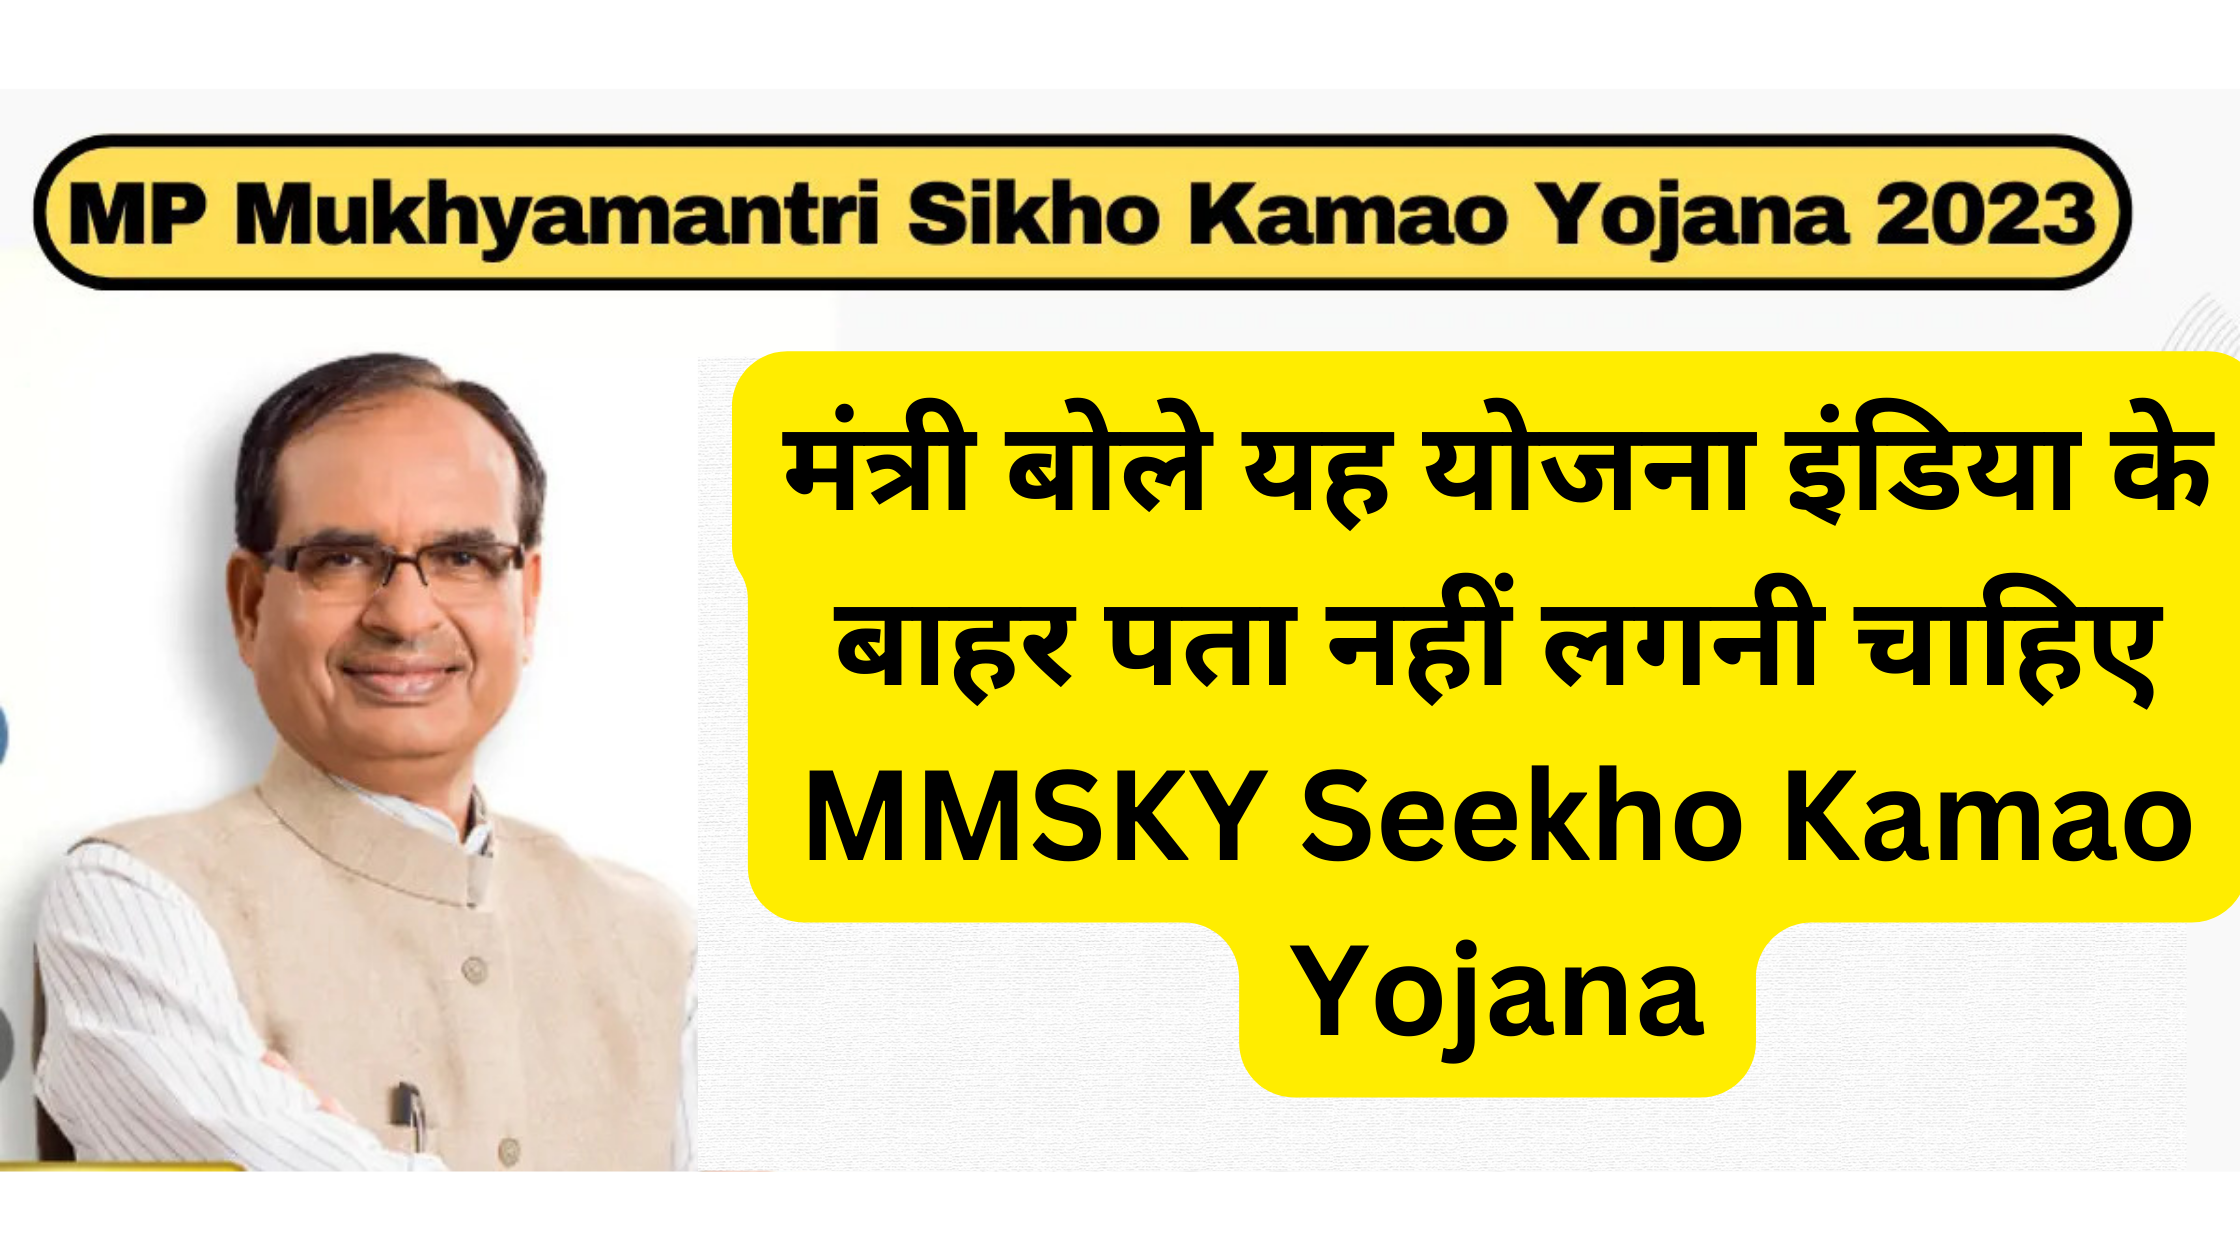 मंत्री बोले यह योजना इंडिया के बाहर पता नहीं लगनी चाहिए MMSKY Seekho Kamao Yojana